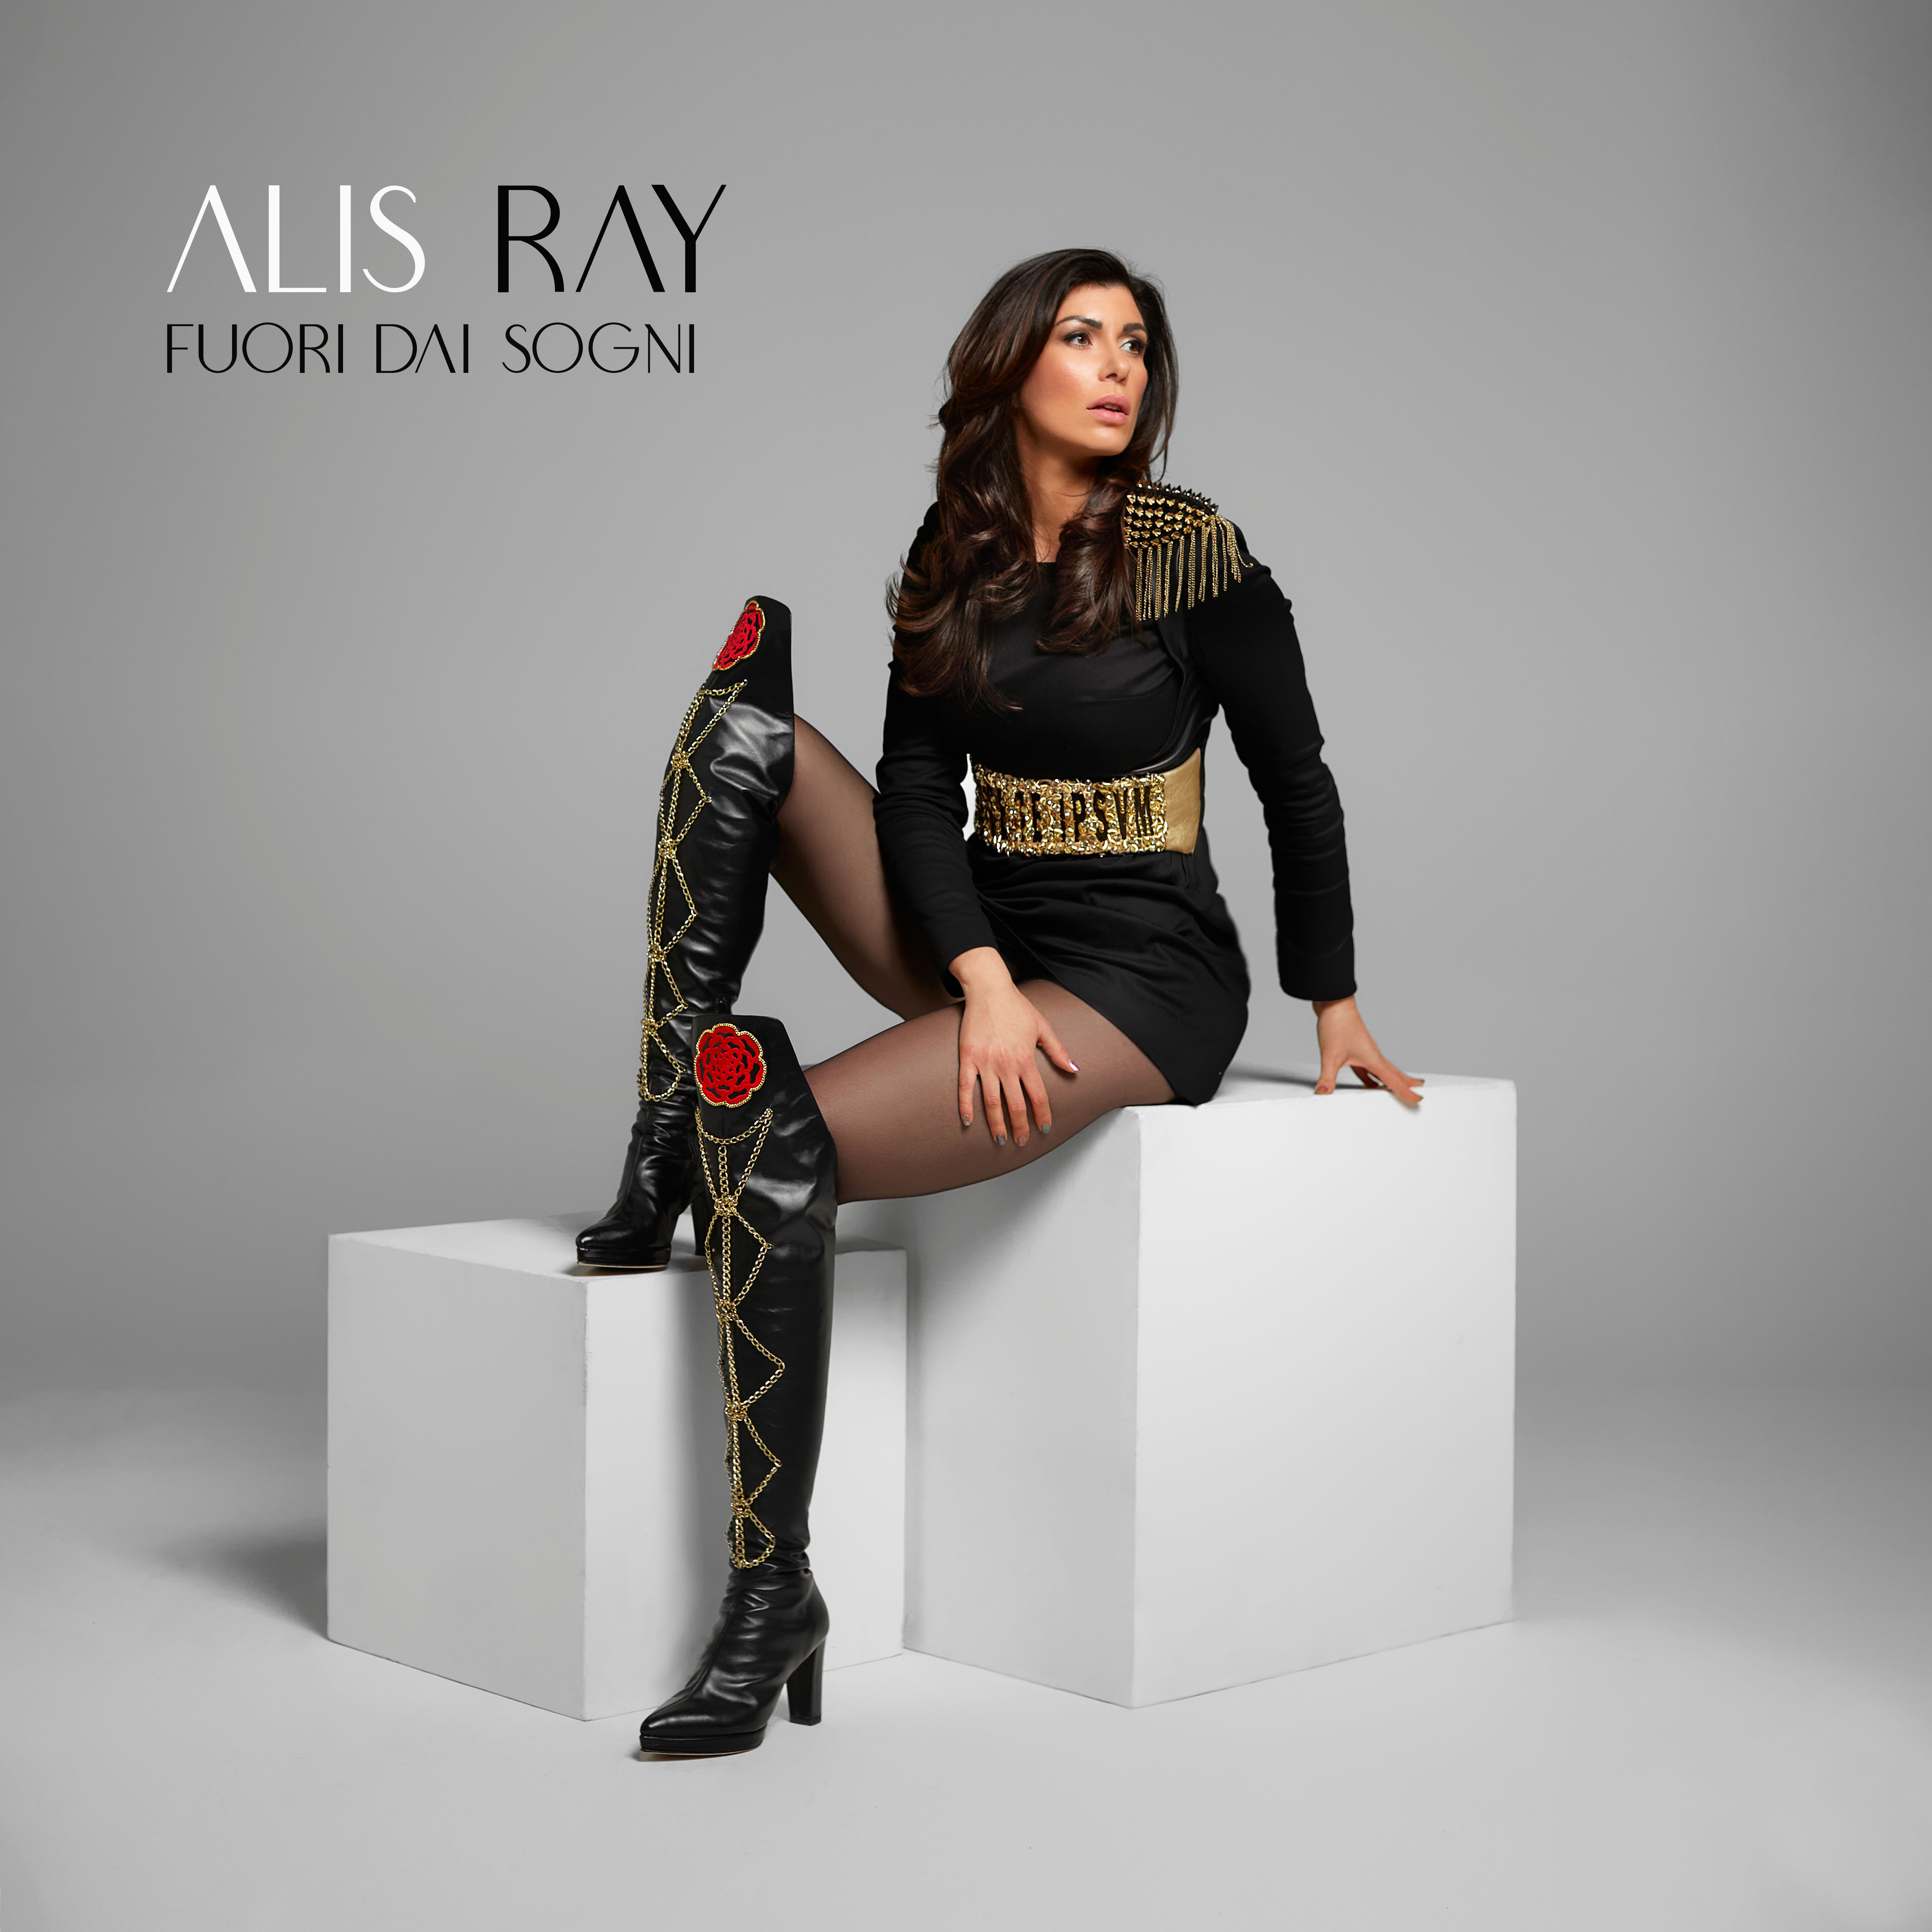 Fuori dai sogni l’album d’esordio di Alis Ray 